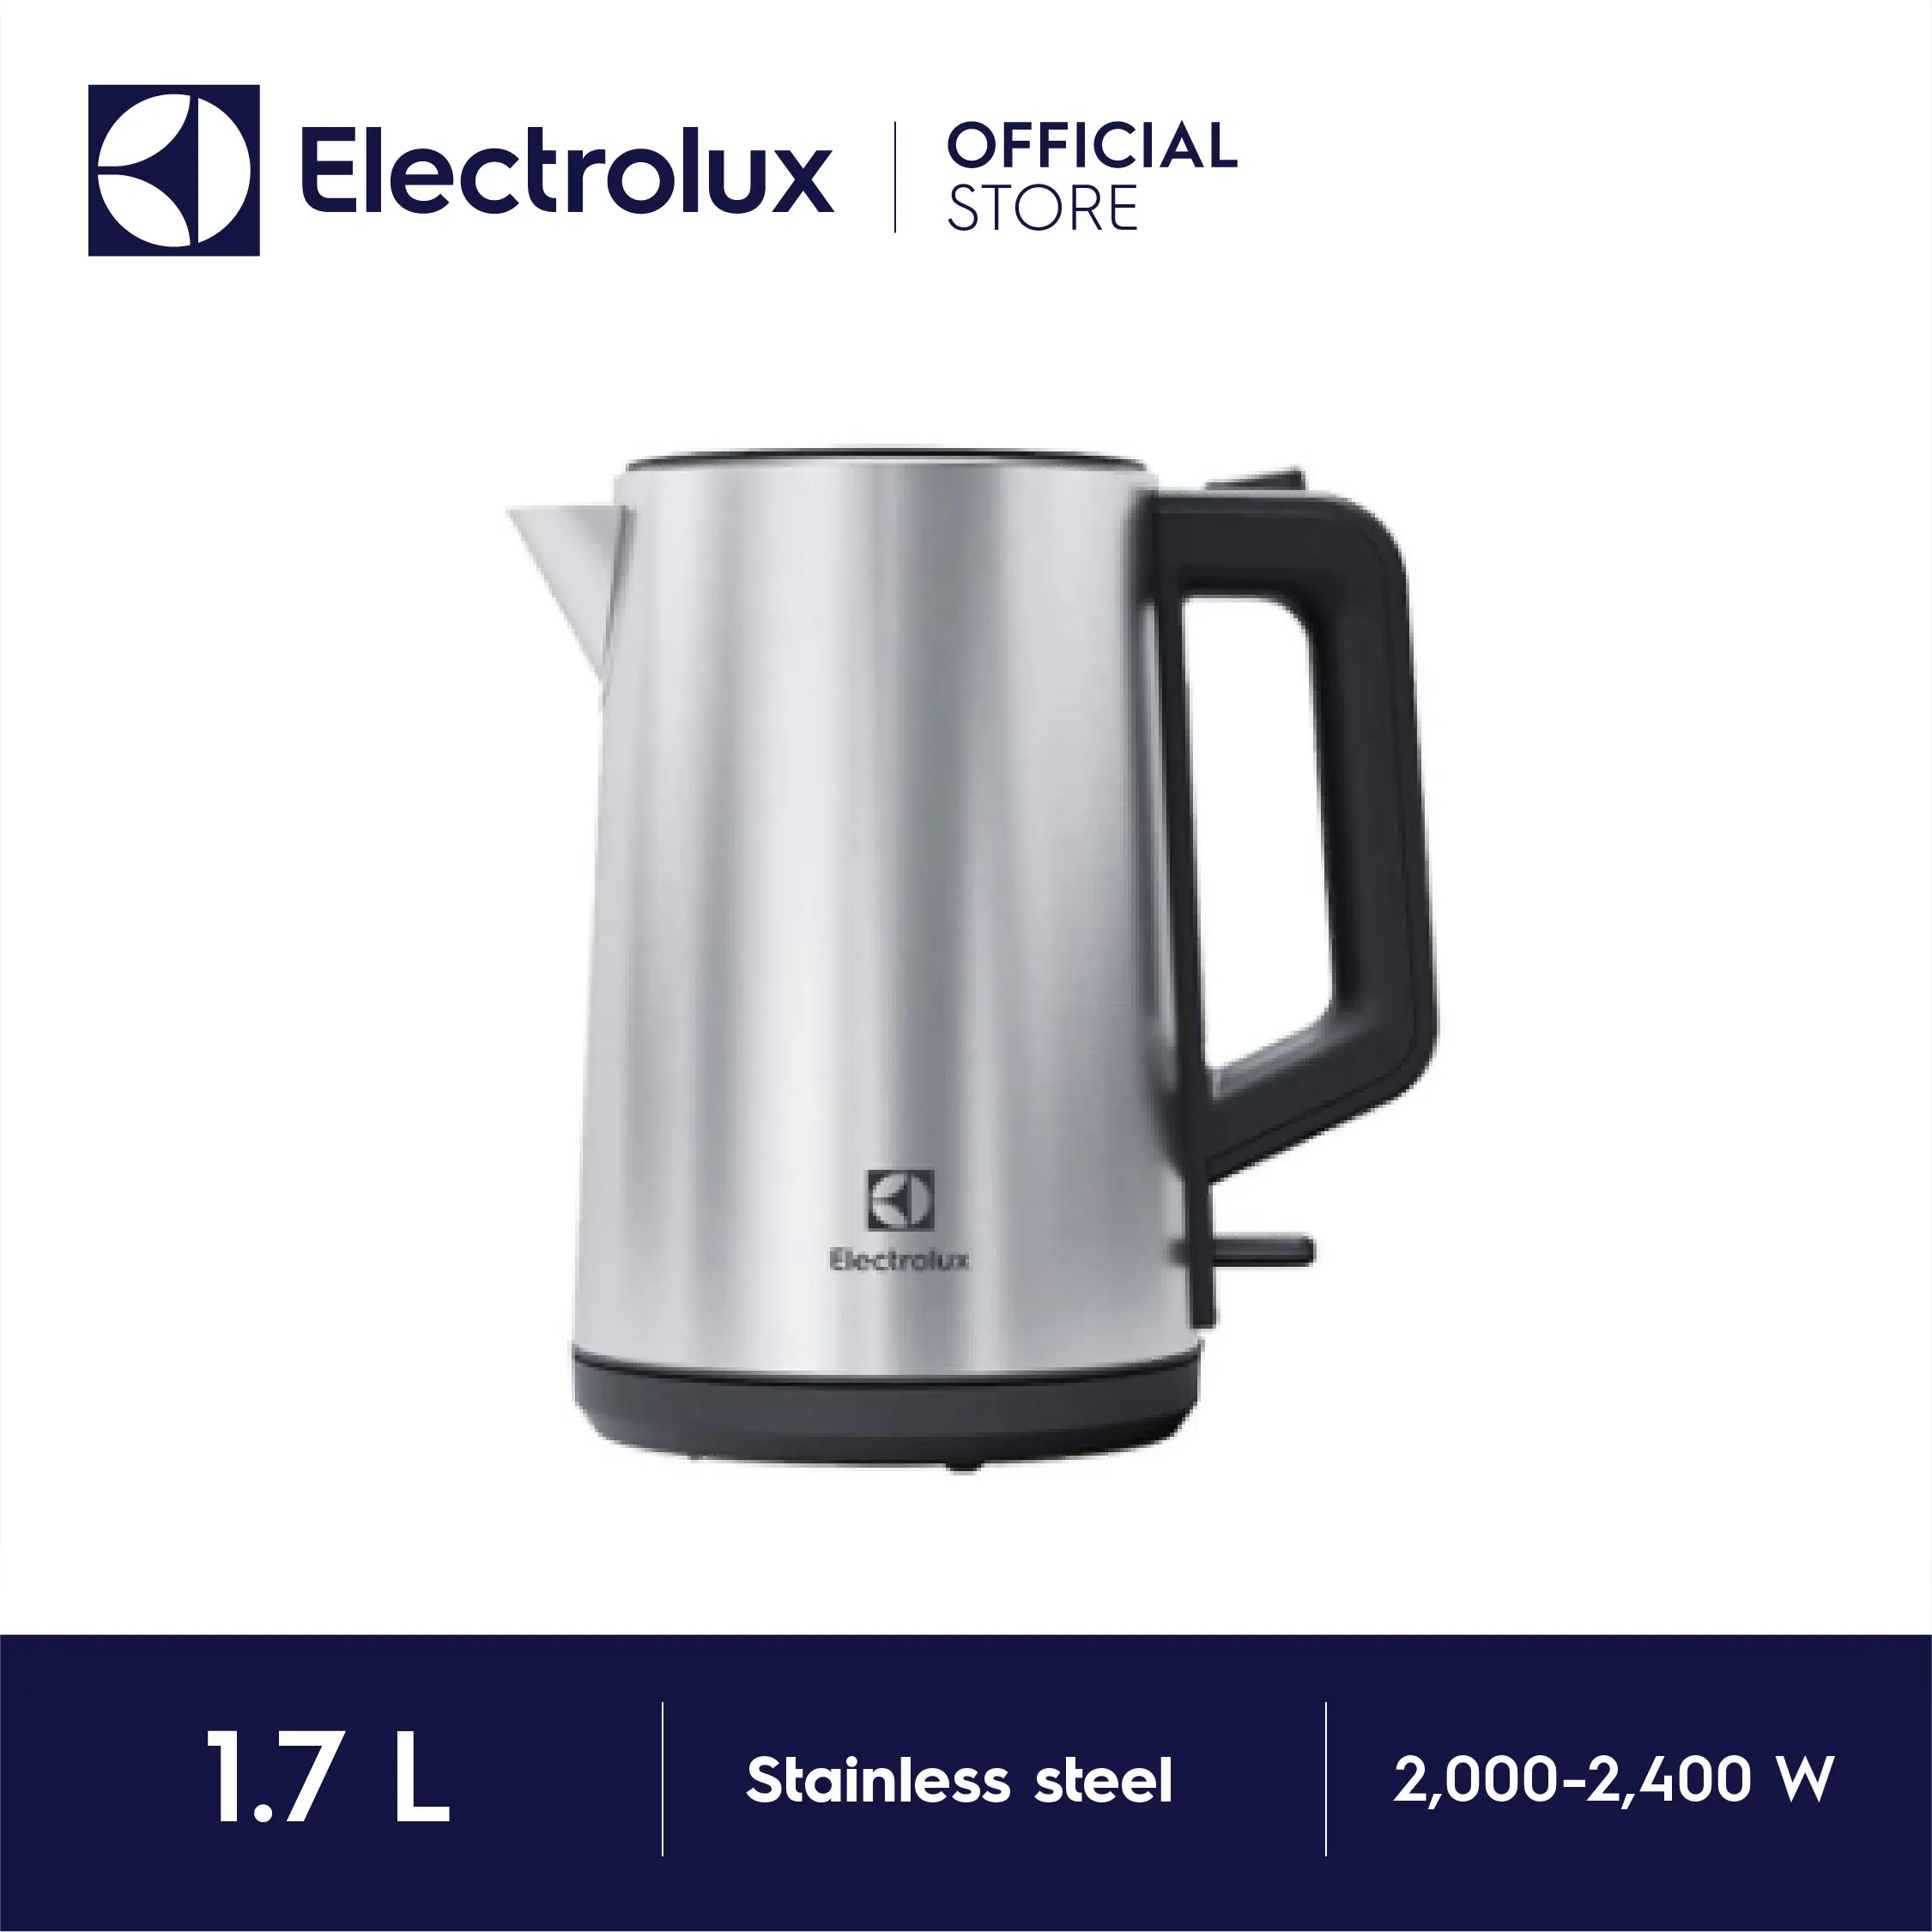 Electrolux กาต้มน้ำไฟฟ้า ความจุ 1.7 ลิตร รุ่น E4EK1-50SS 